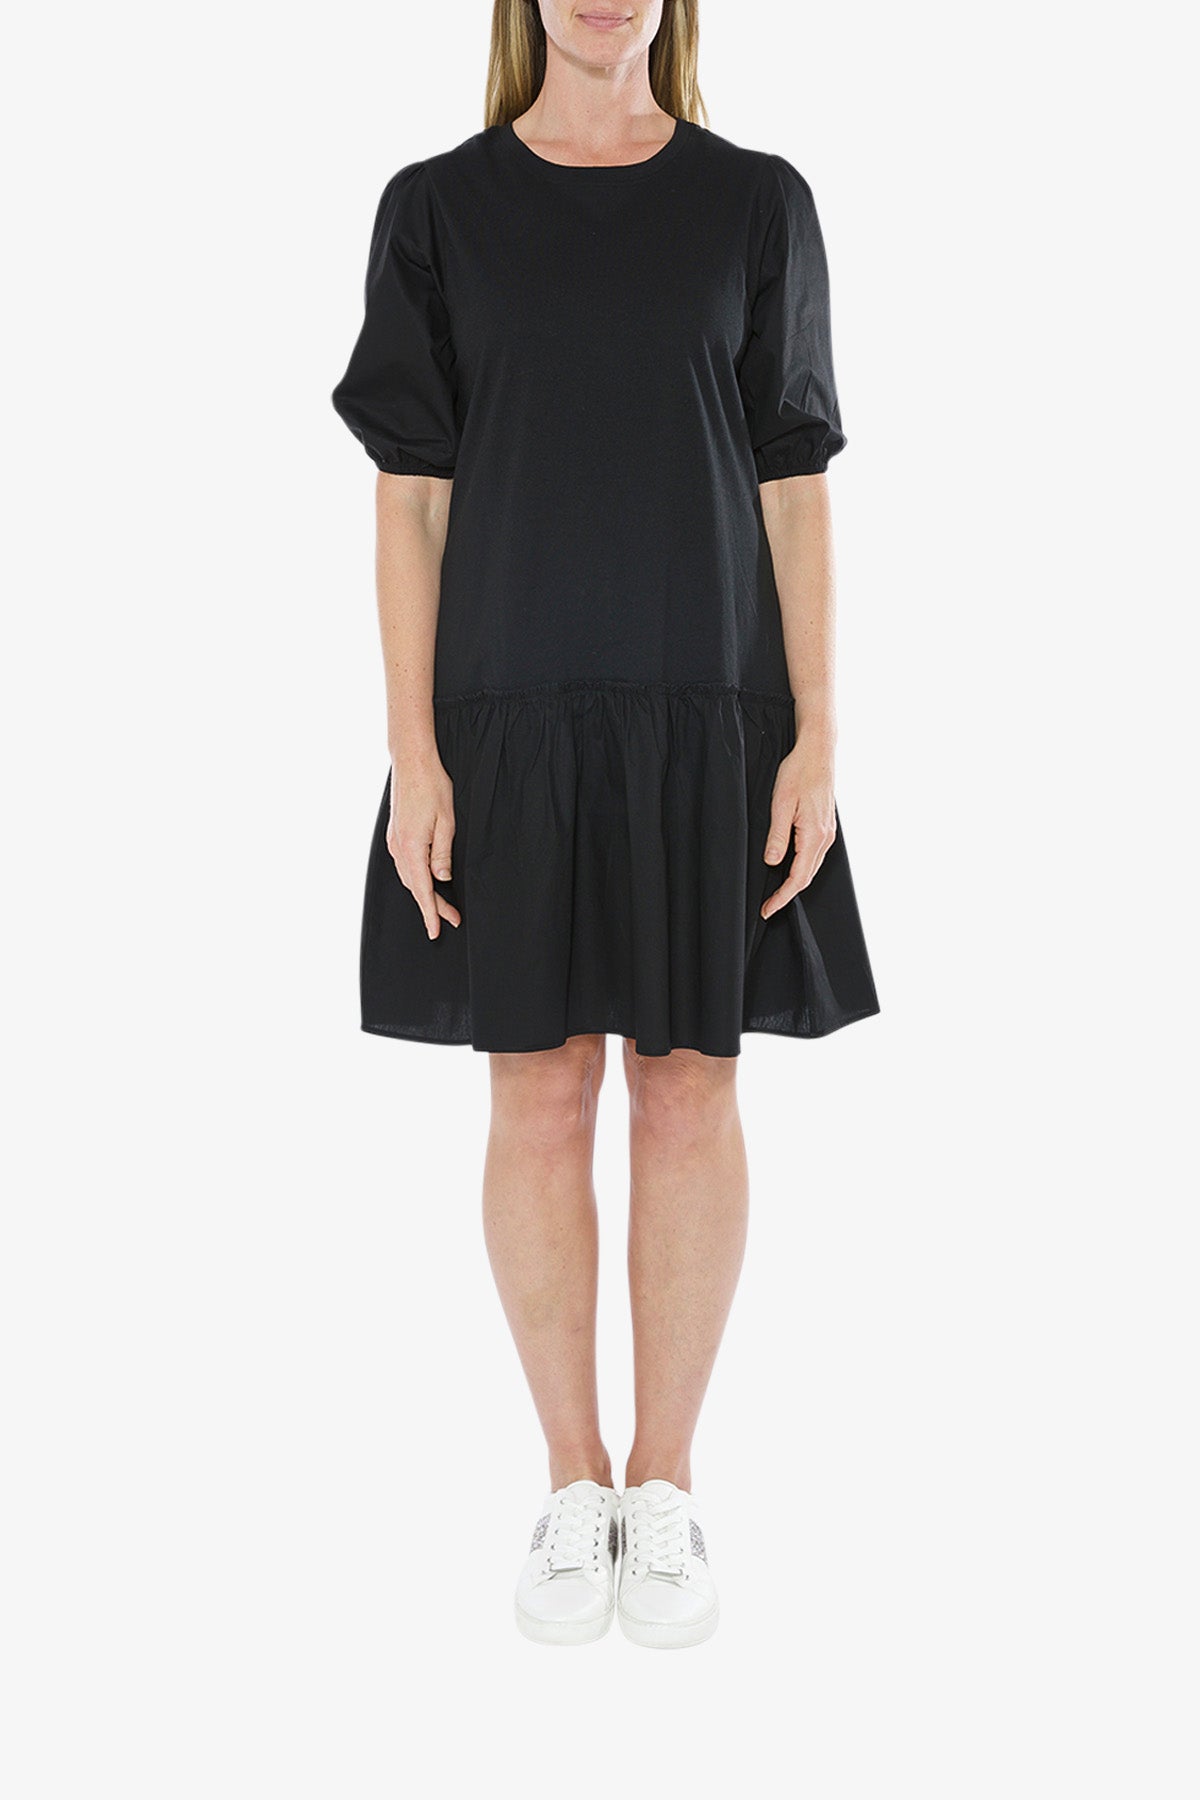 Spliced Short Dress Black